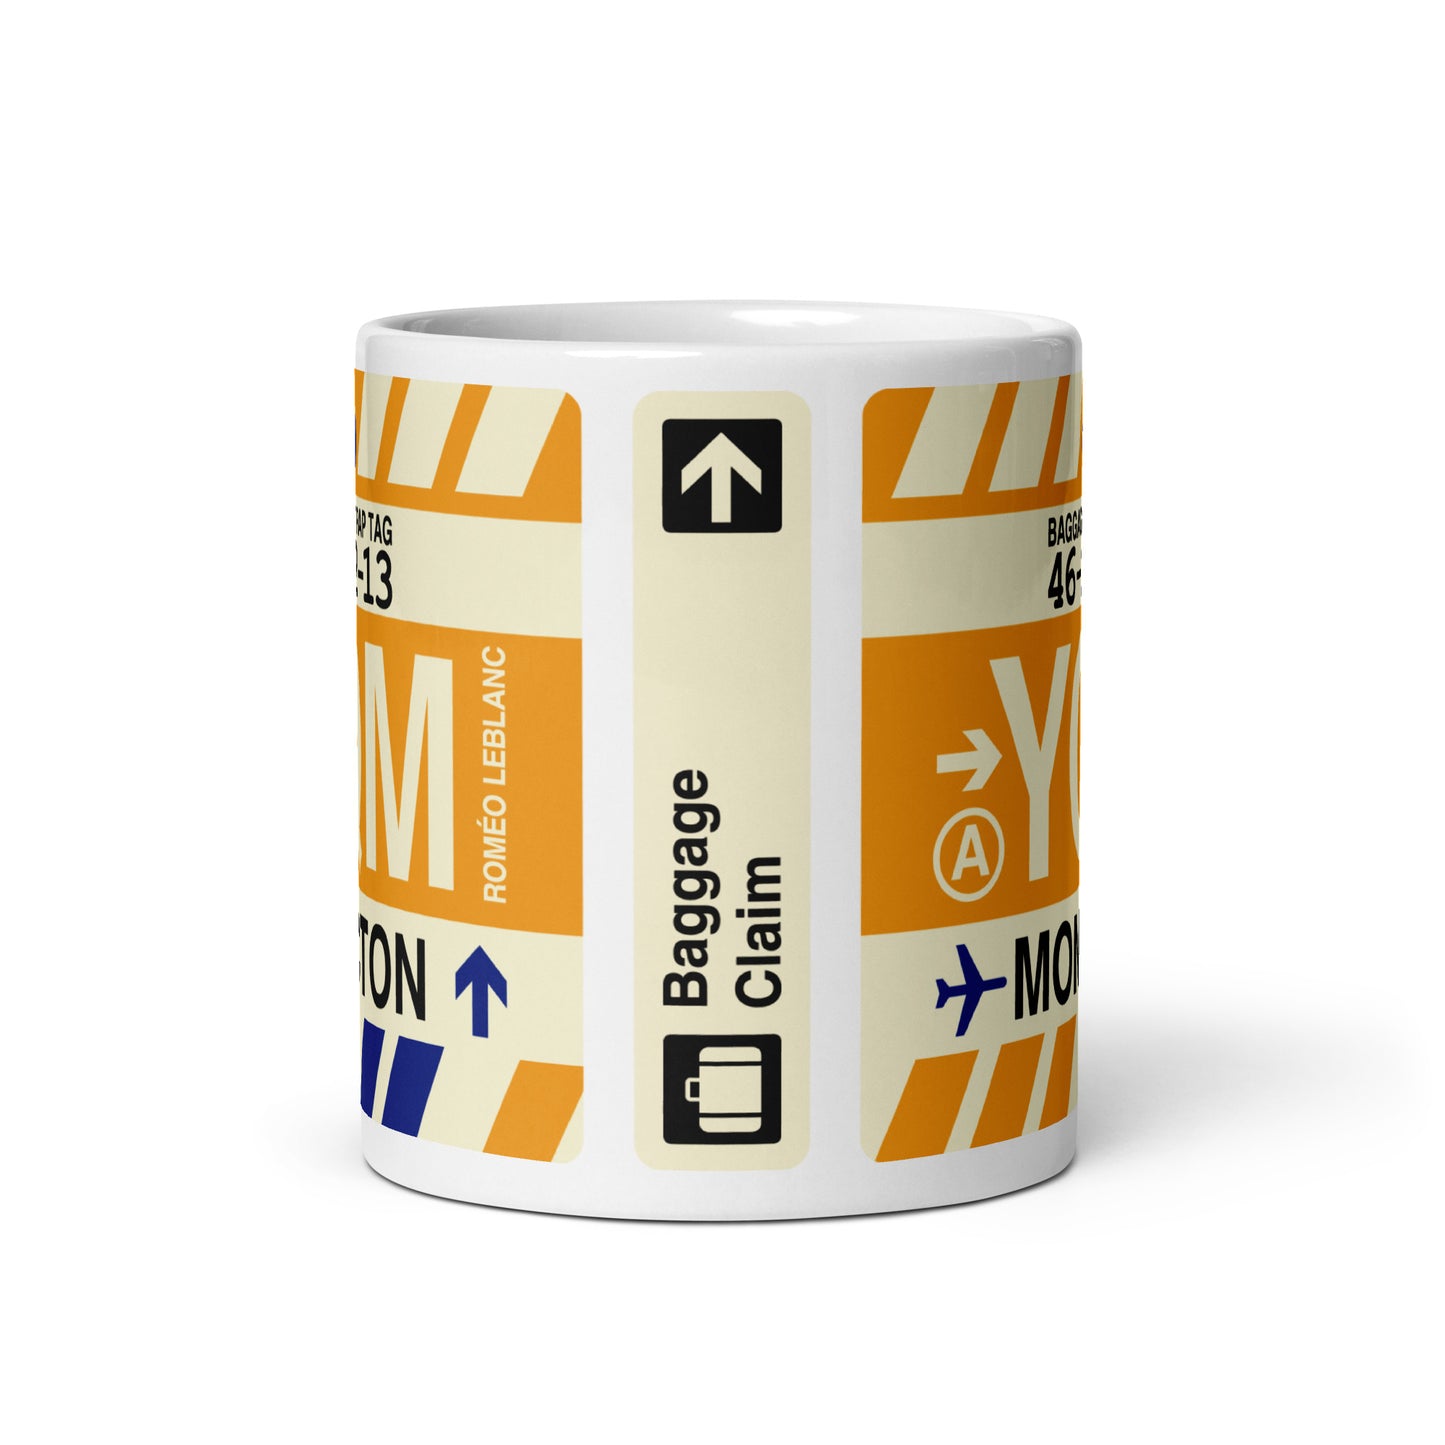 Travel-Themed Coffee Mug • YQM Moncton • YHM Designs - Image 02